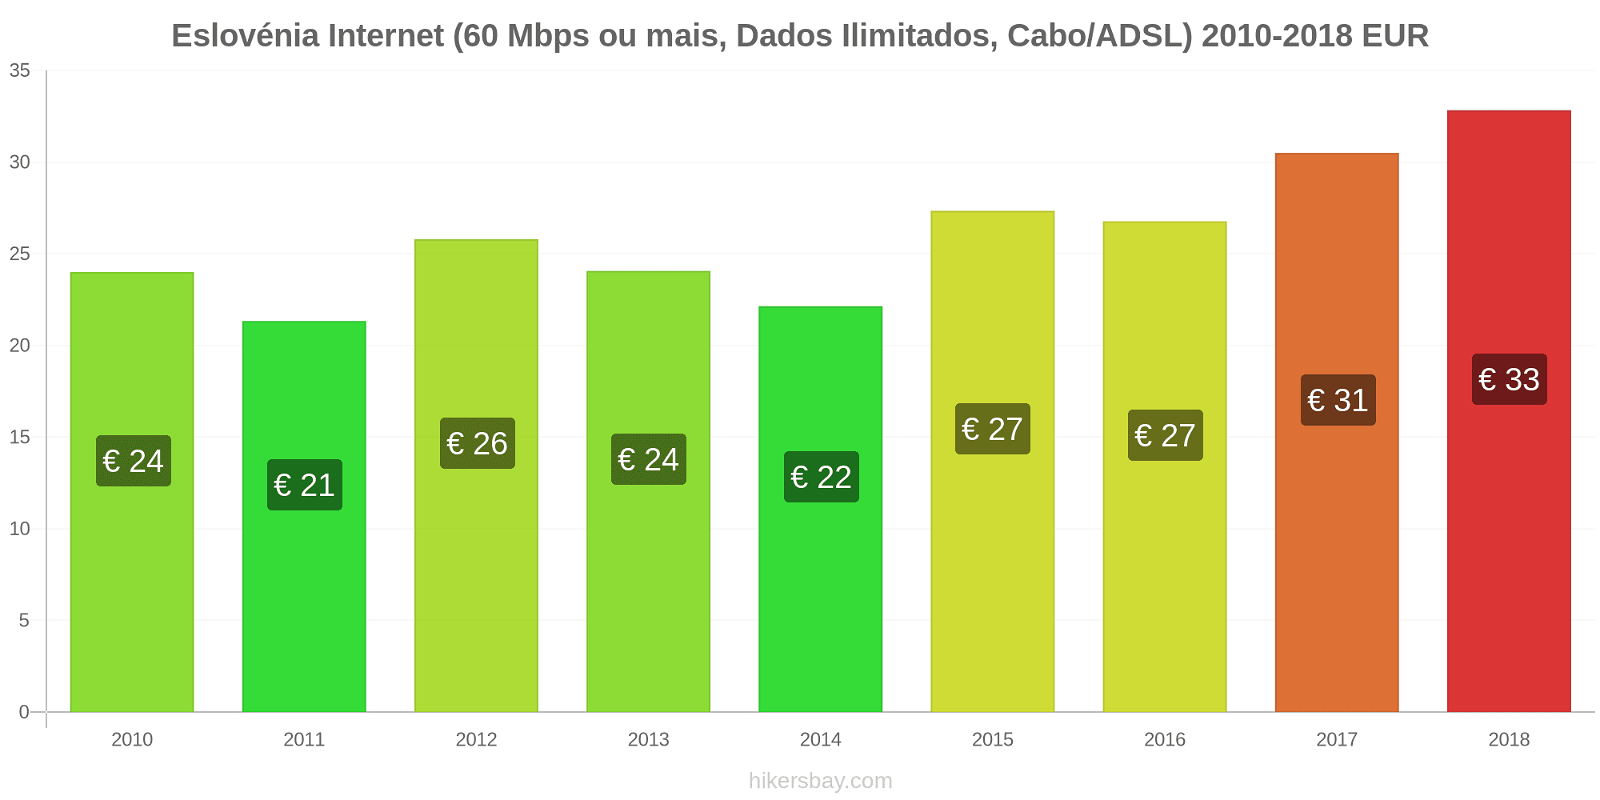 Eslovénia mudanças de preços Internet (60 Mbps ou mais, dados ilimitados, cabo/ADSL) hikersbay.com